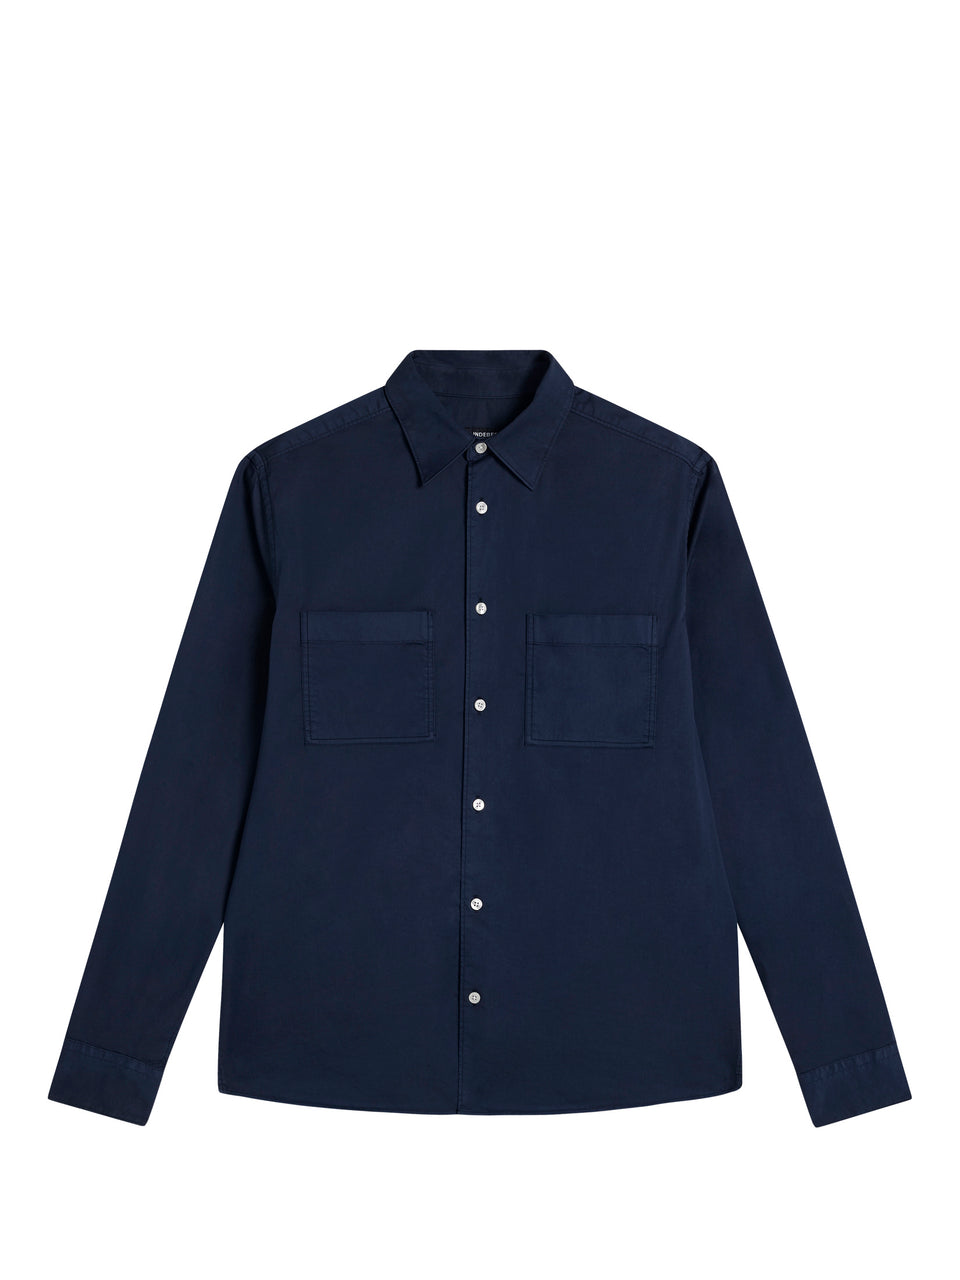 Gino Reg Garment Dye Shirt / JL Navy